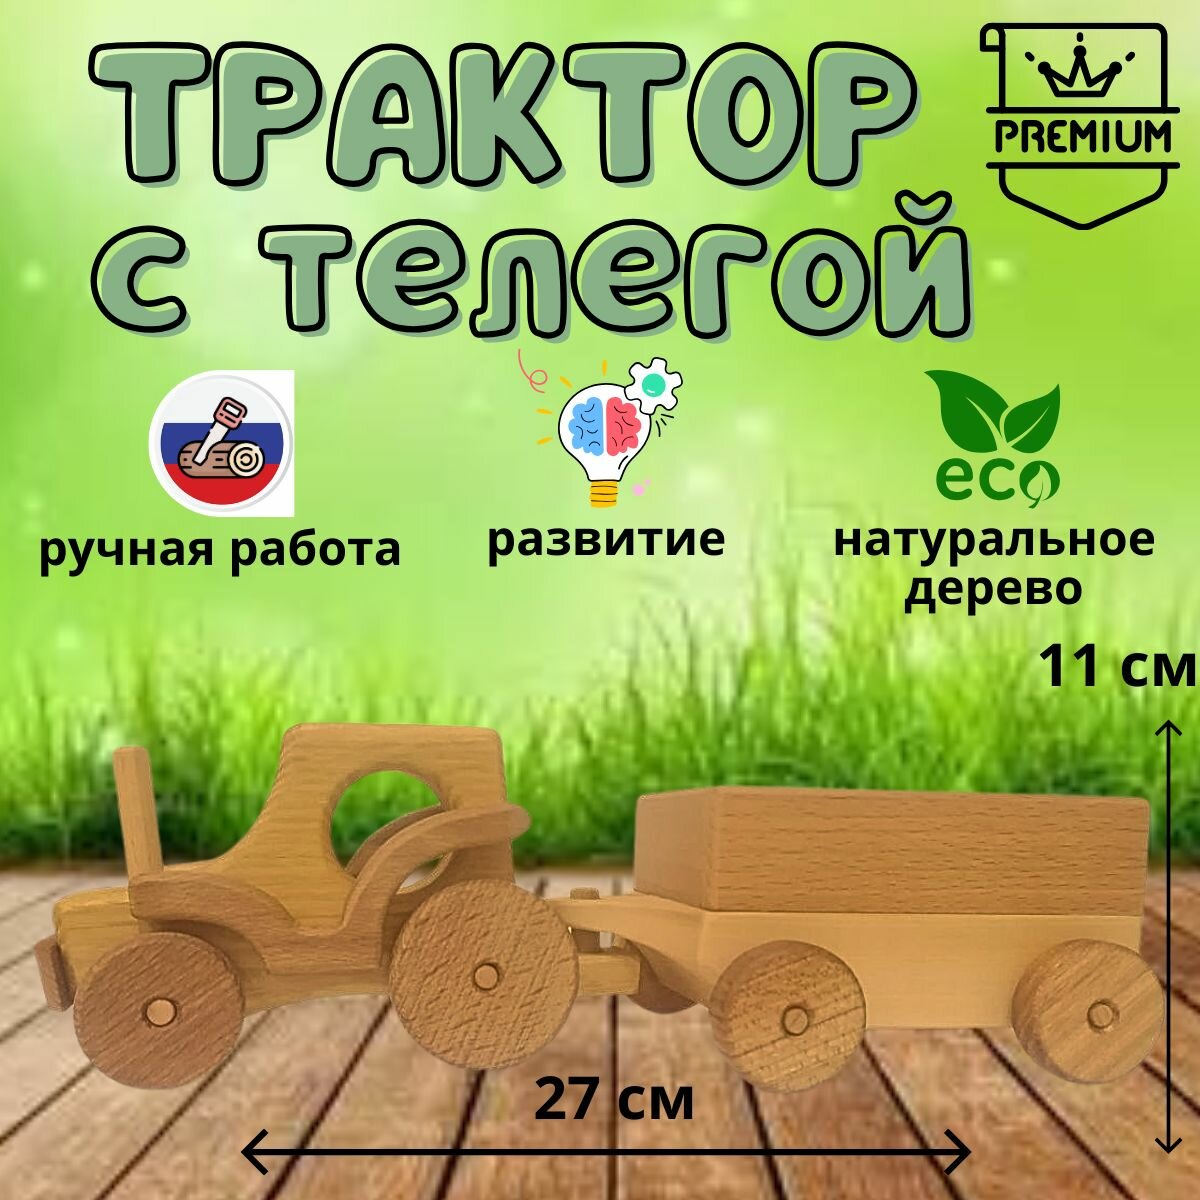 Трактор с телегой - деревянная авторская игрушечная машинка